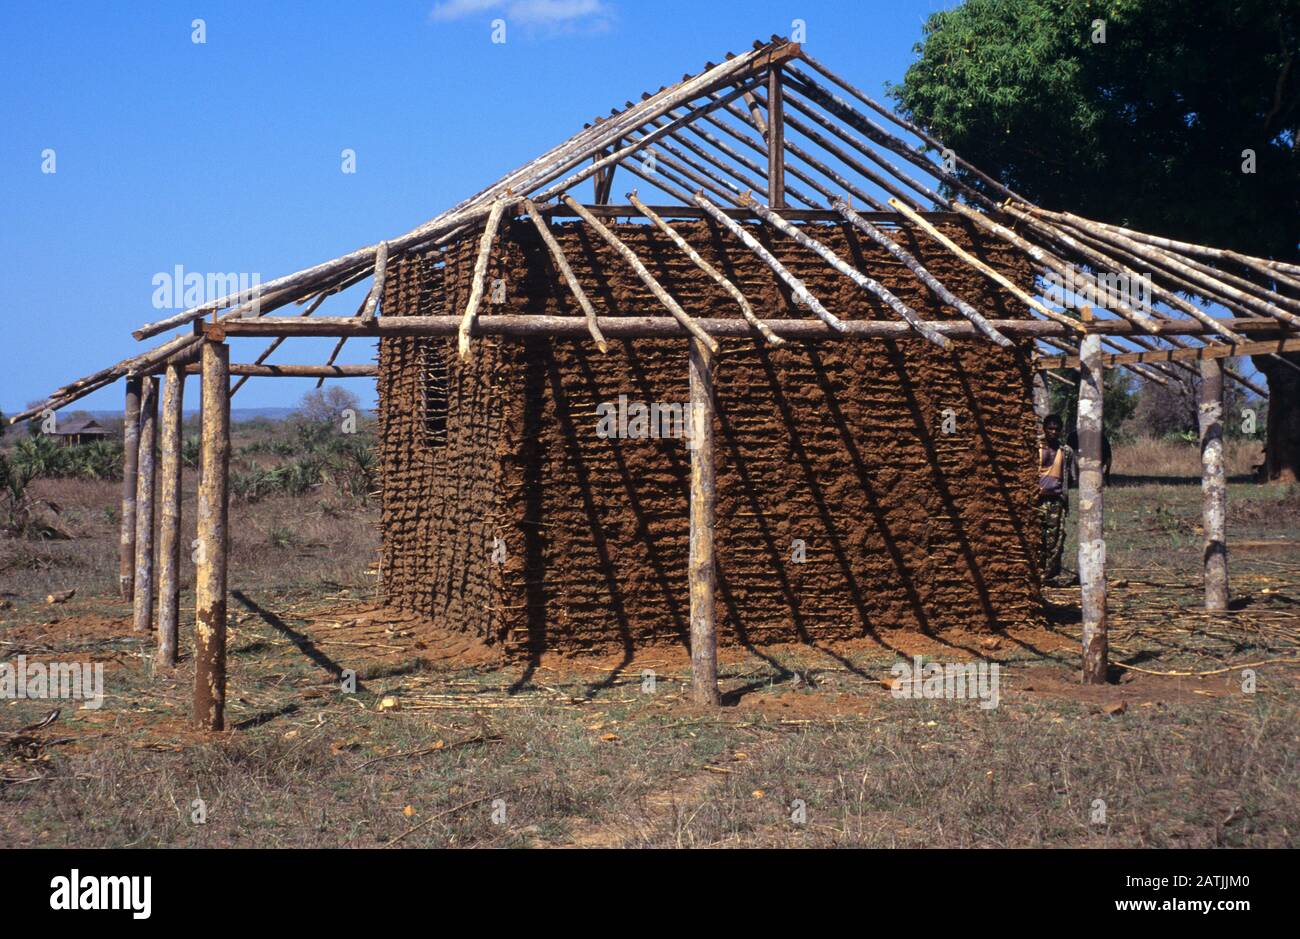 Adobe Hut ou Mud & Timber House en construction à Madagascar Banque D'Images